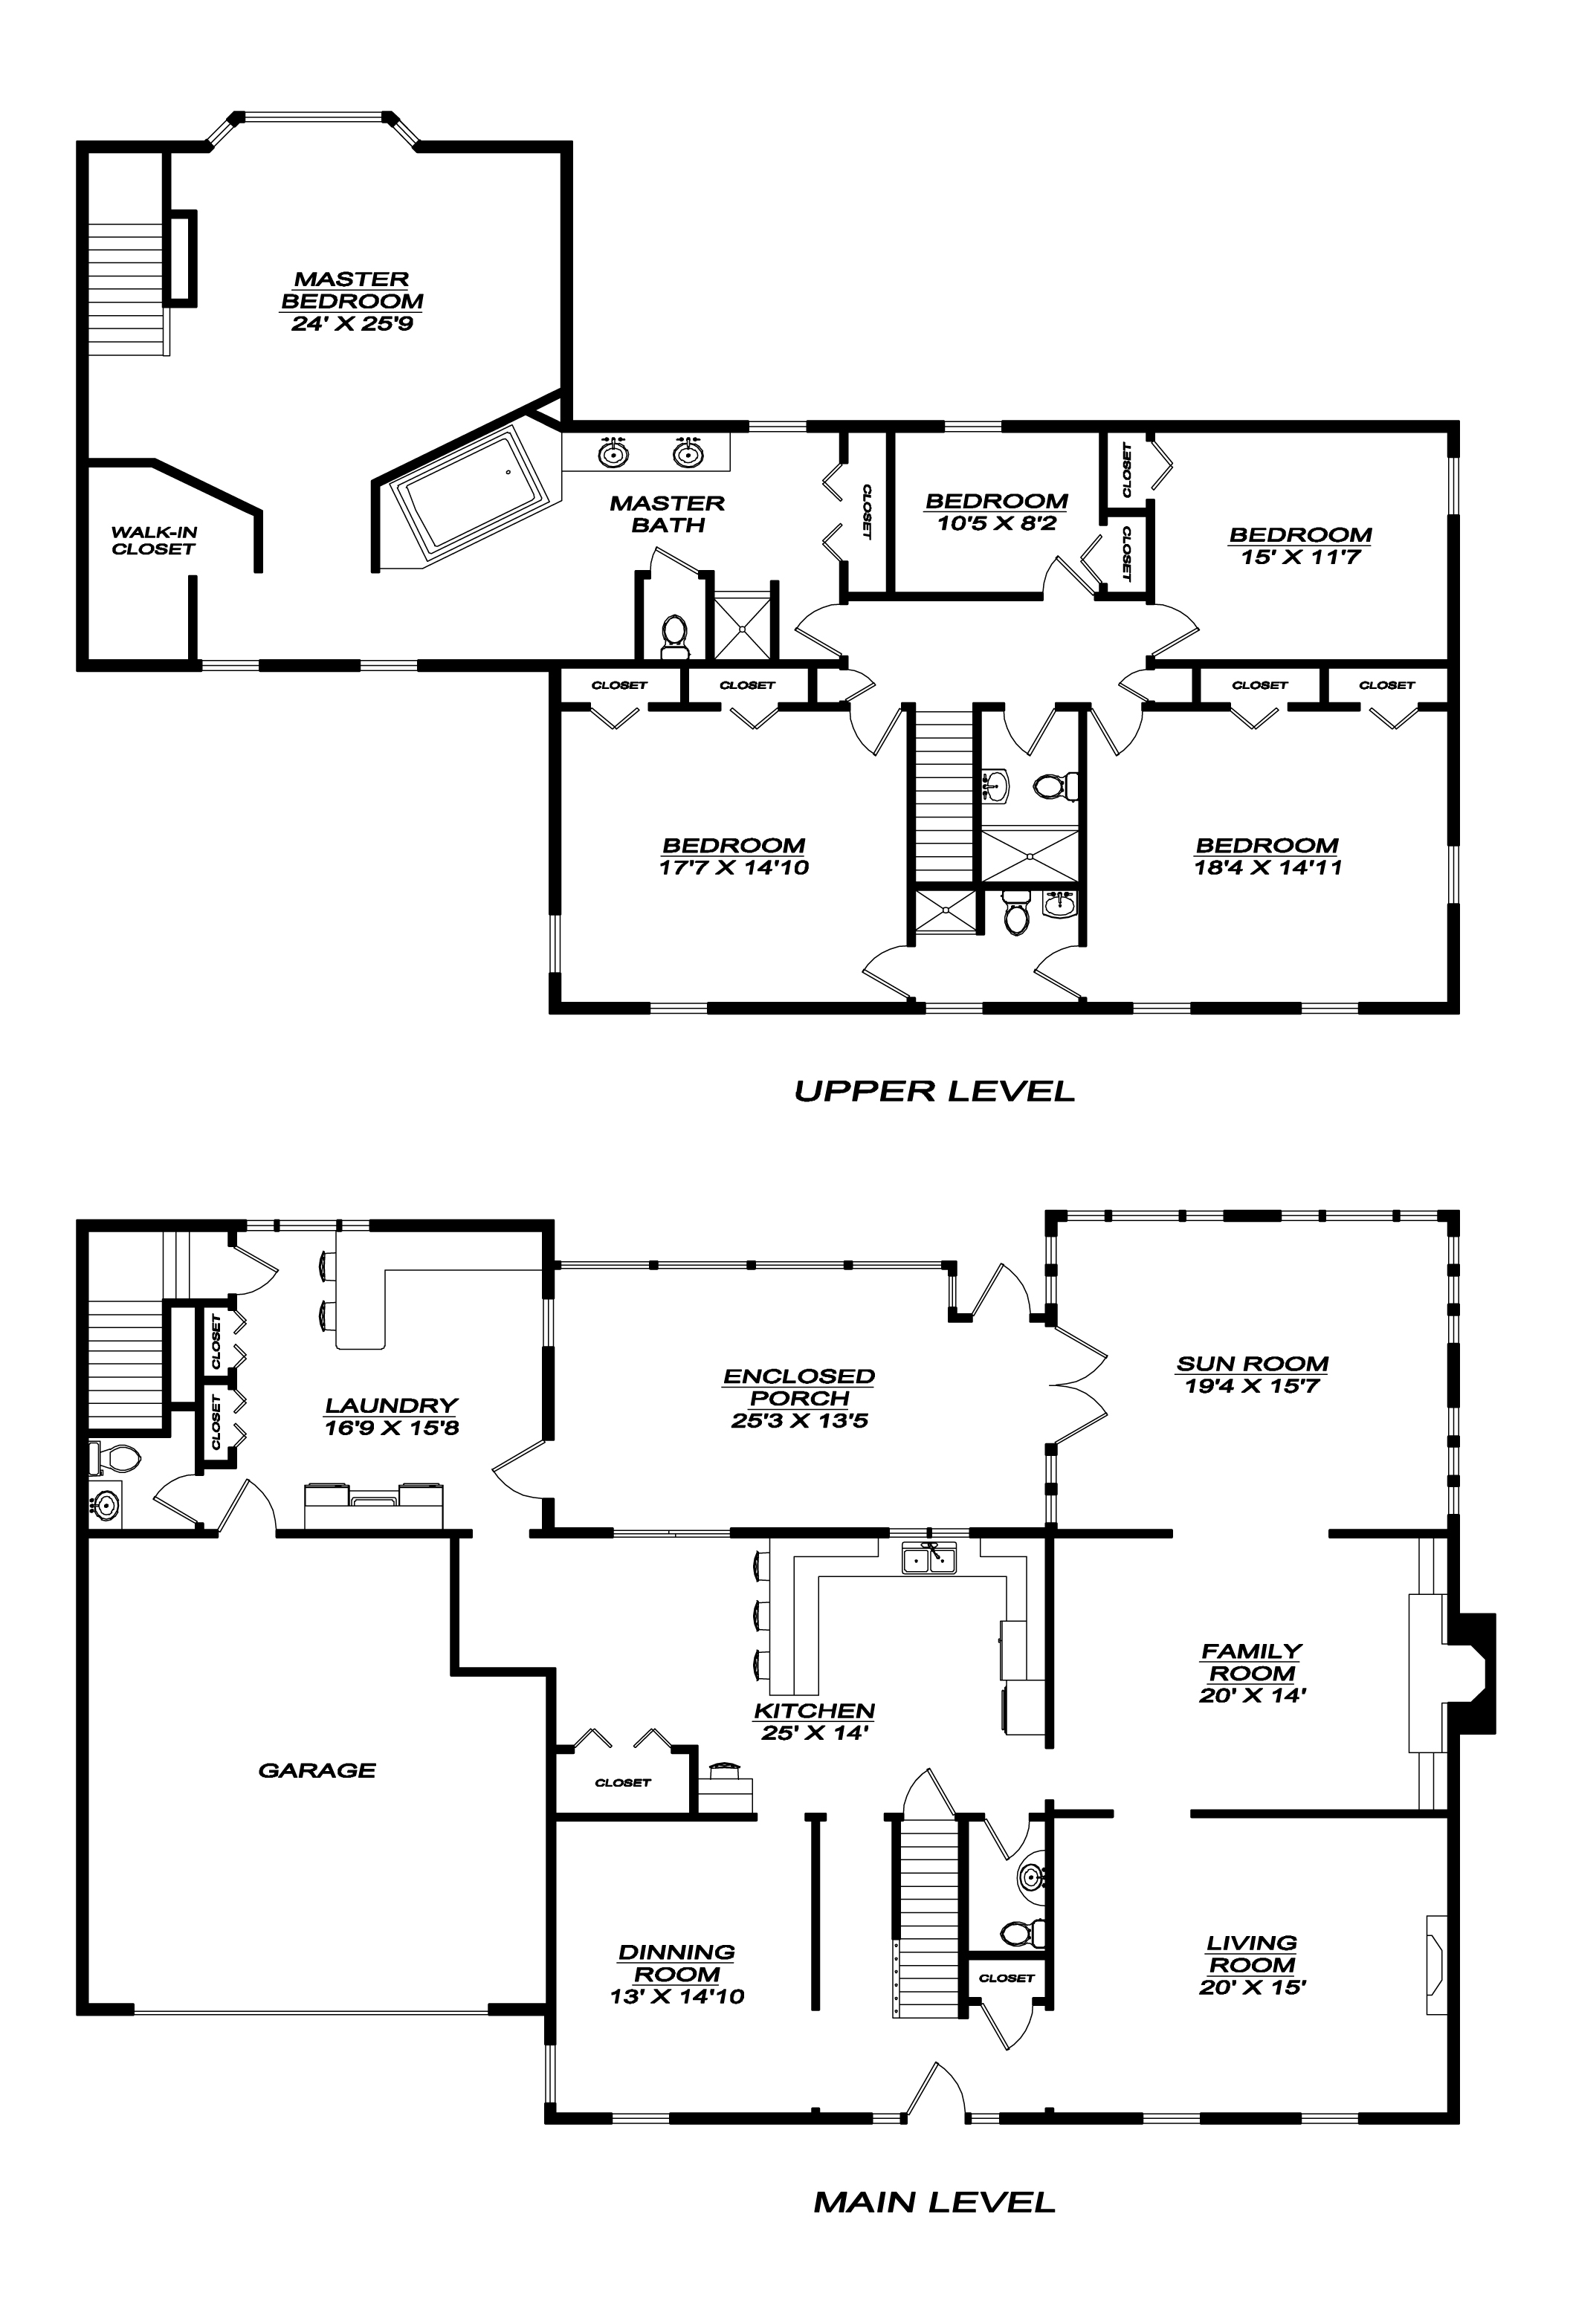 Home for Sale Hudson Ohio Floor plan jpg hickory lane